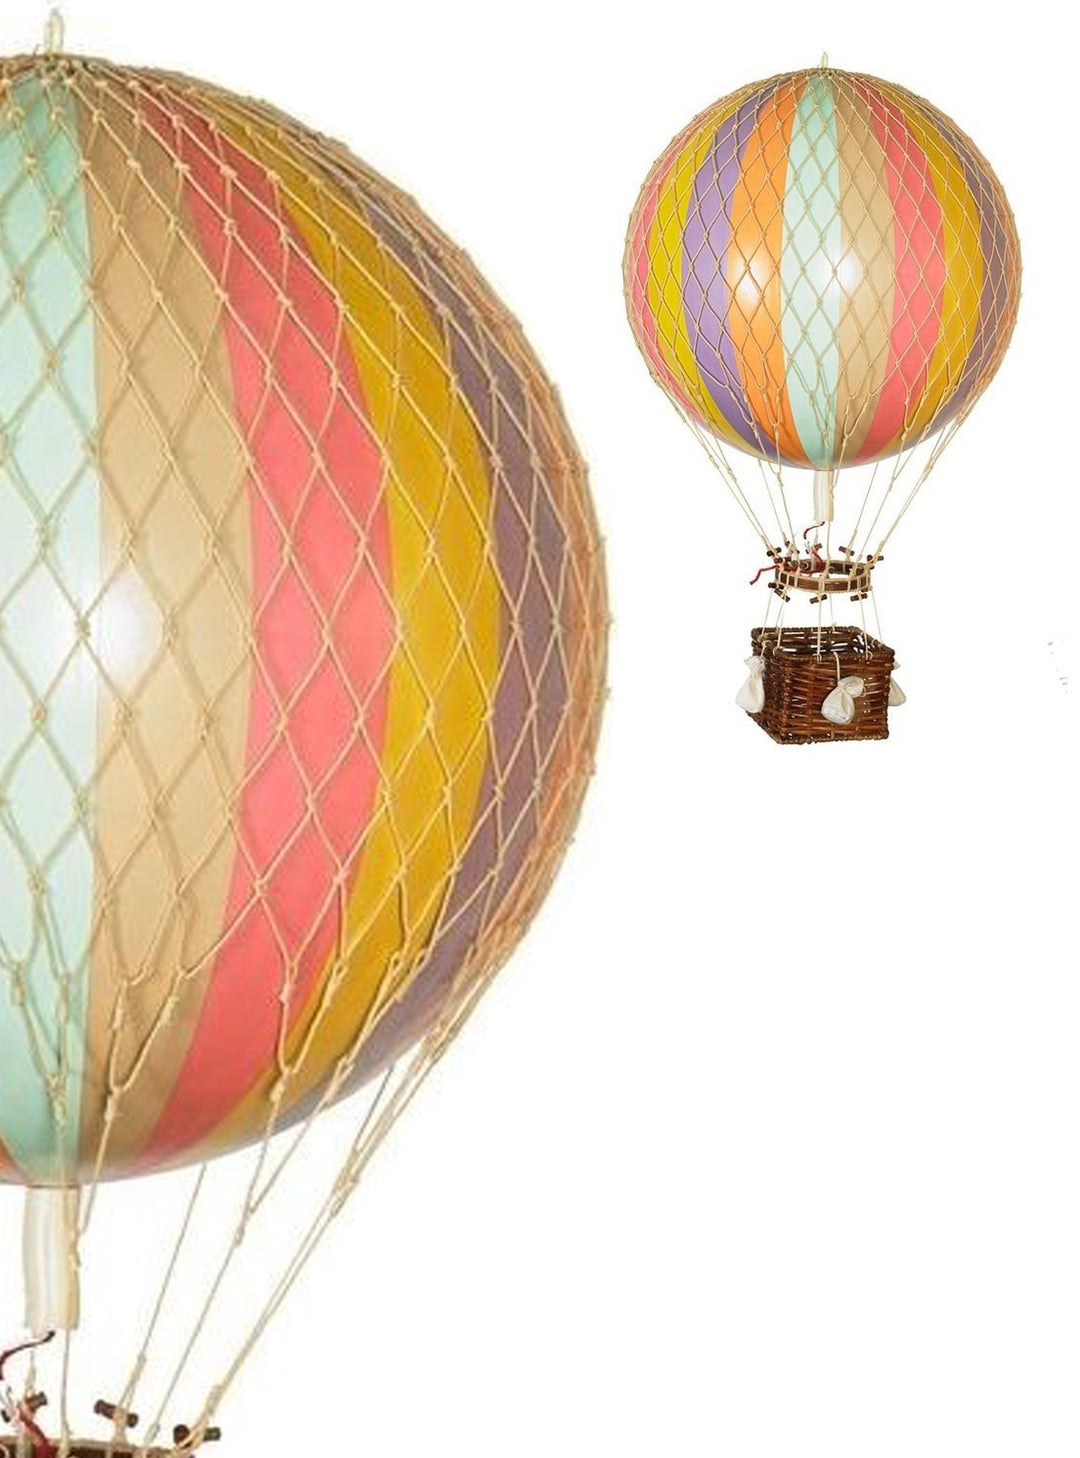 Pastel rainbow Hot Air Balloon,  Vintage Hot Air Balloon Decoration, Authentic Model Hot air balloon